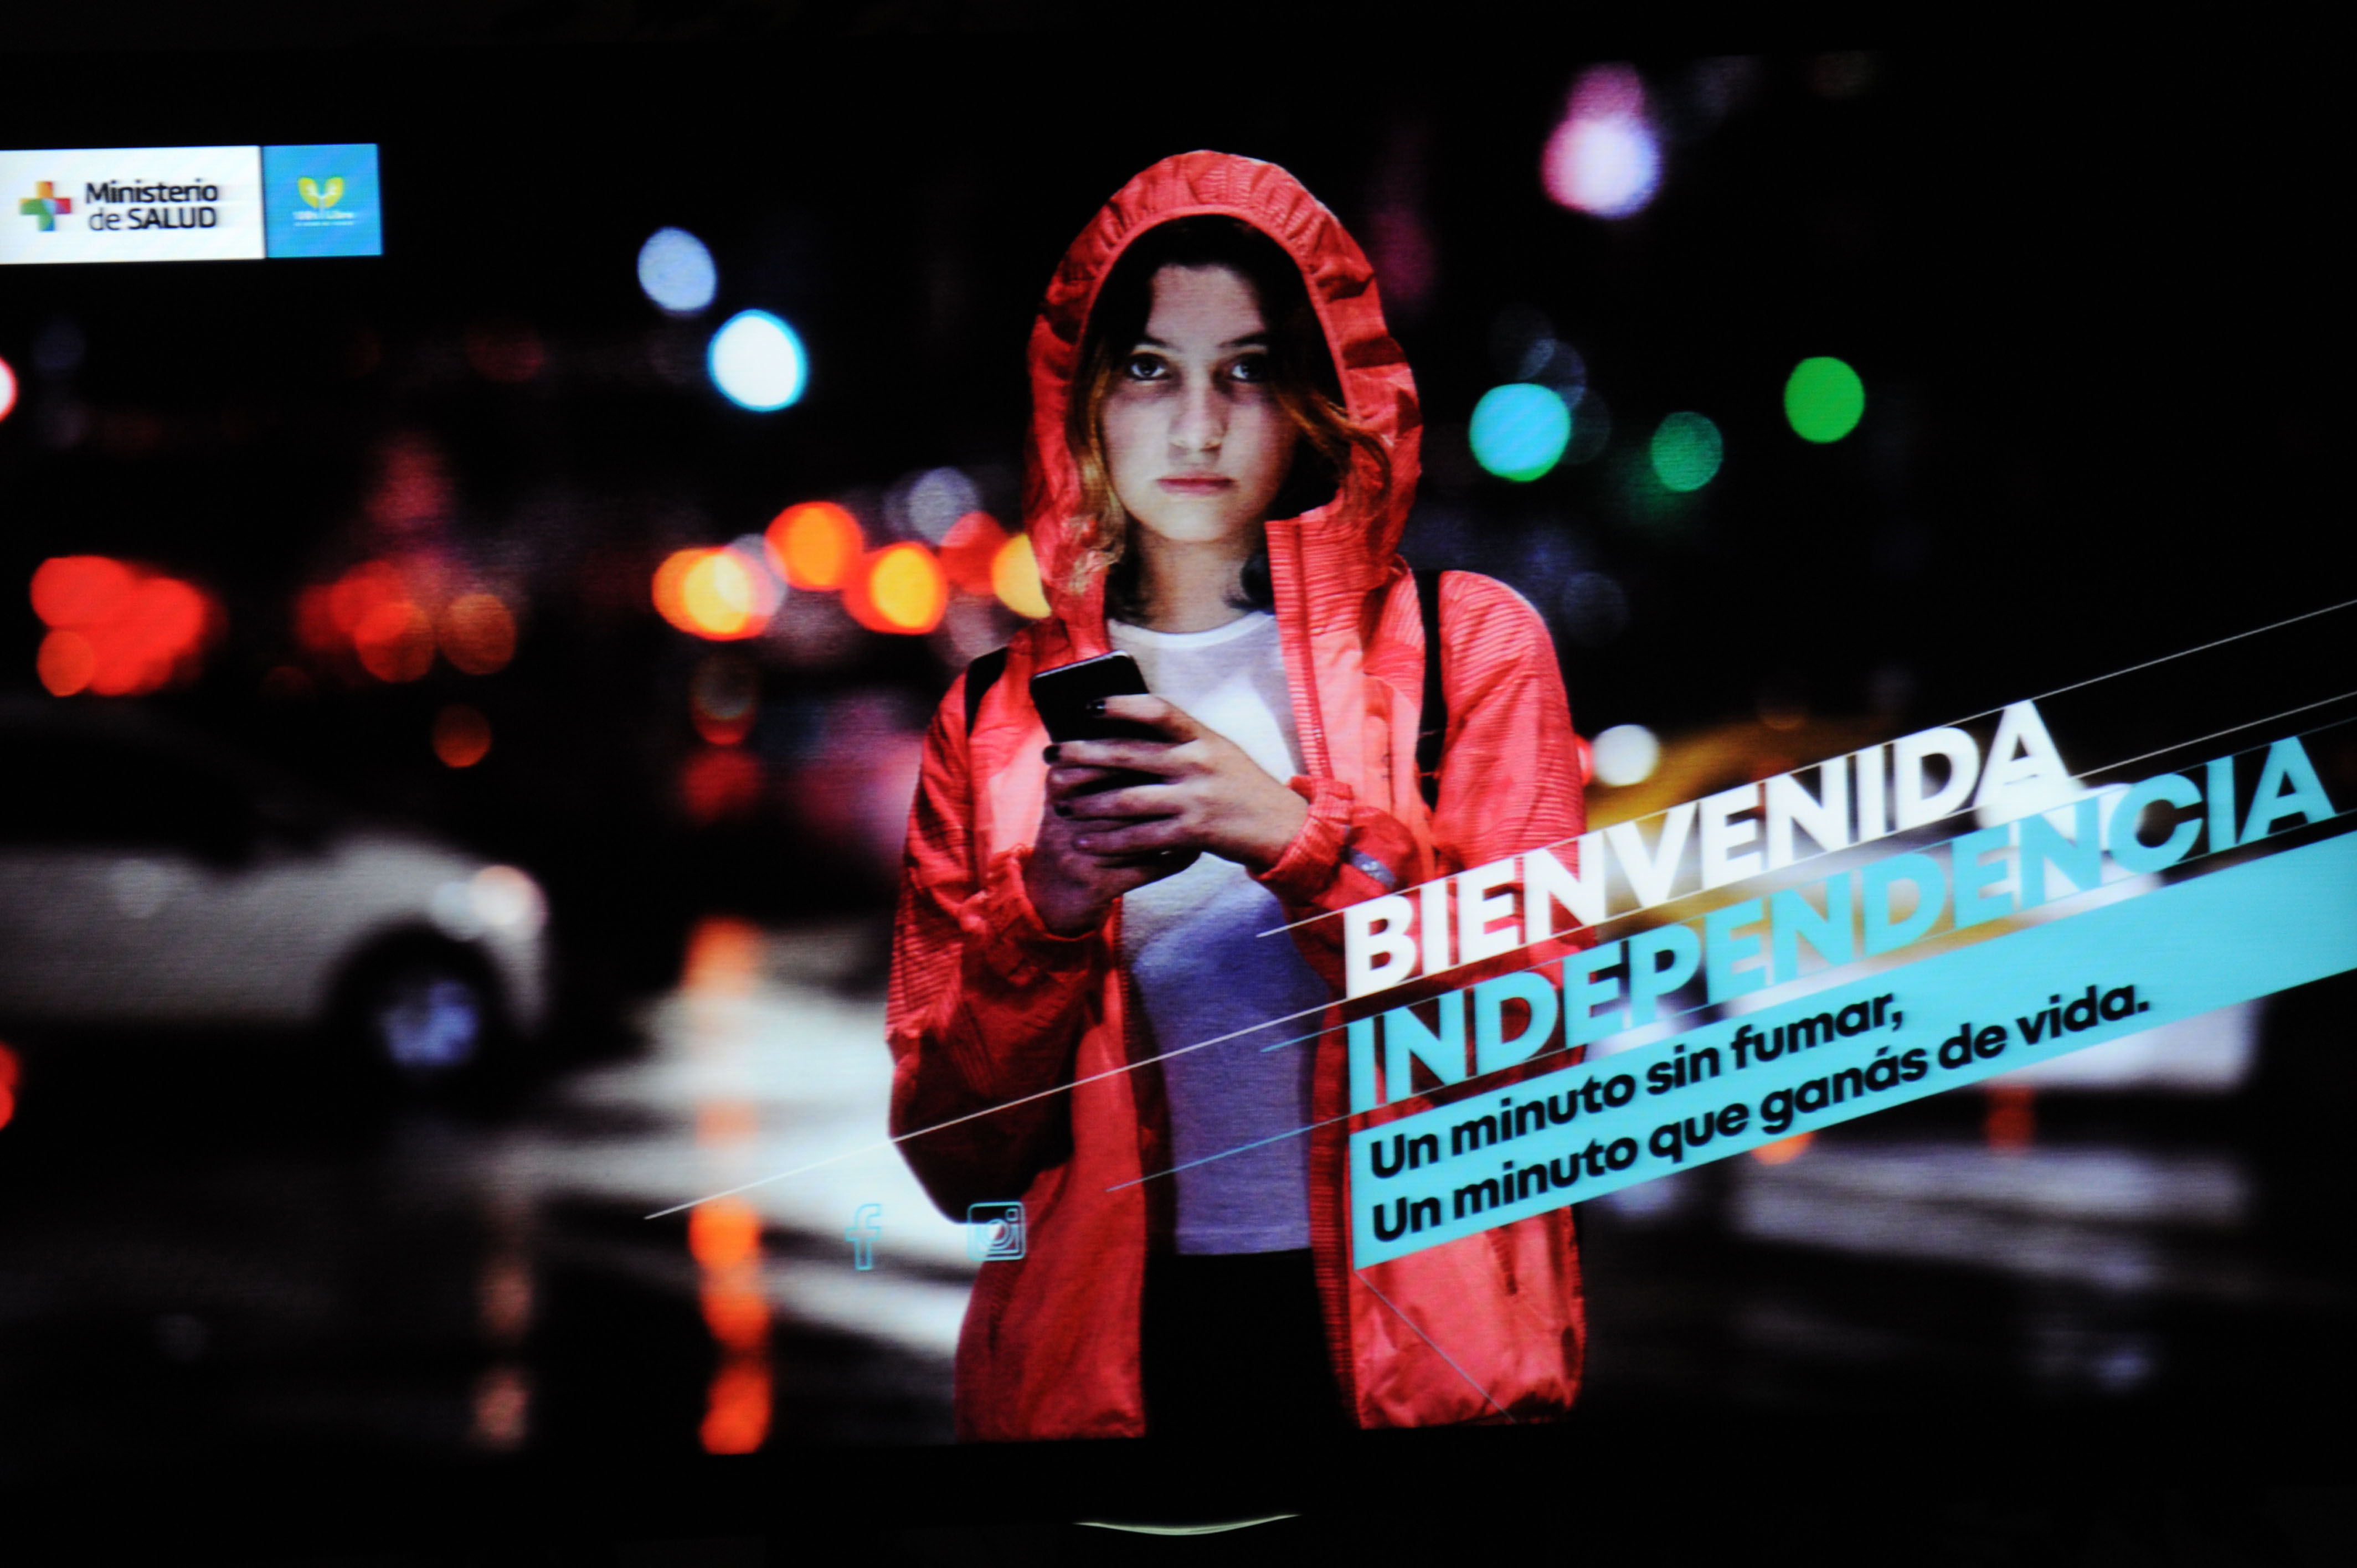 Campaña publicitaria dirigida a mujeres jóvenes de Uruguay